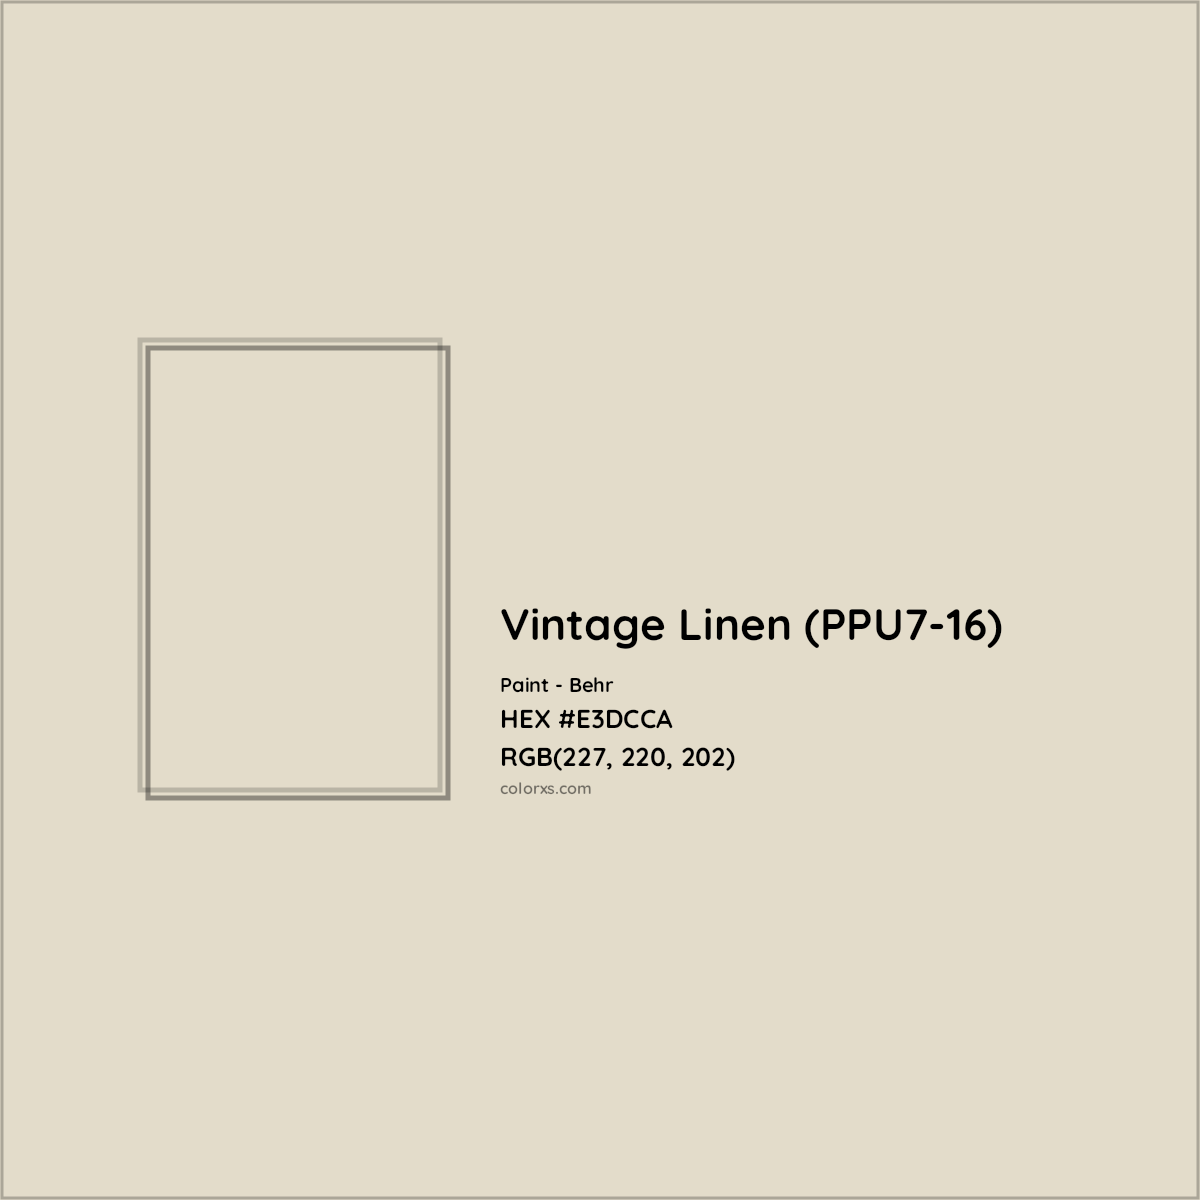 HEX #E3DCCA Vintage Linen (PPU7-16) Paint Behr - Color Code